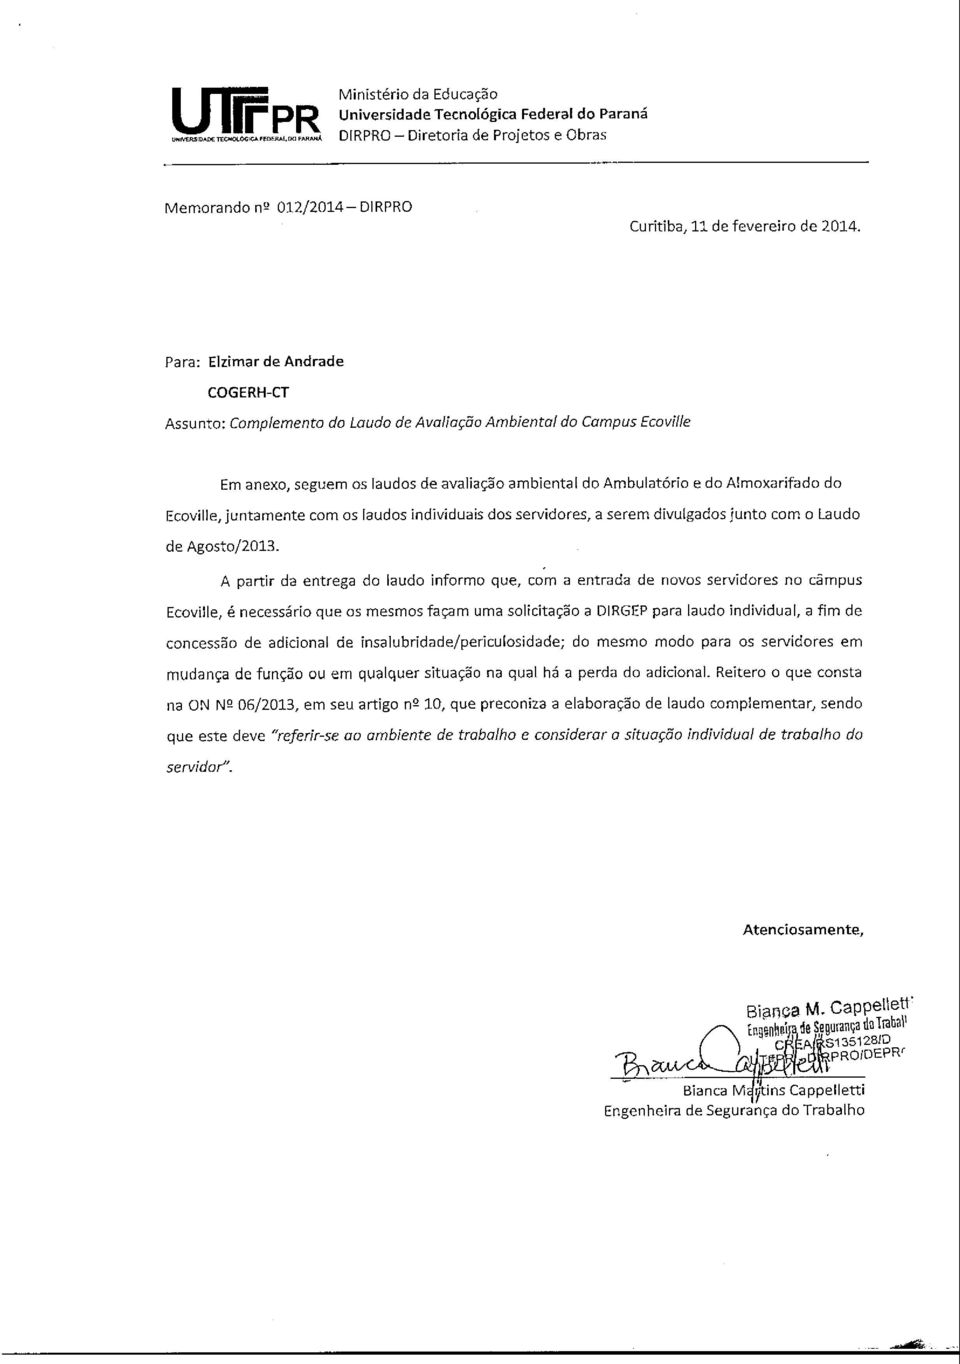 Ecoville, juntamente com os laudos individuais dos servidores, a serem divulgados junto com o Laudo de Agosto/2013.